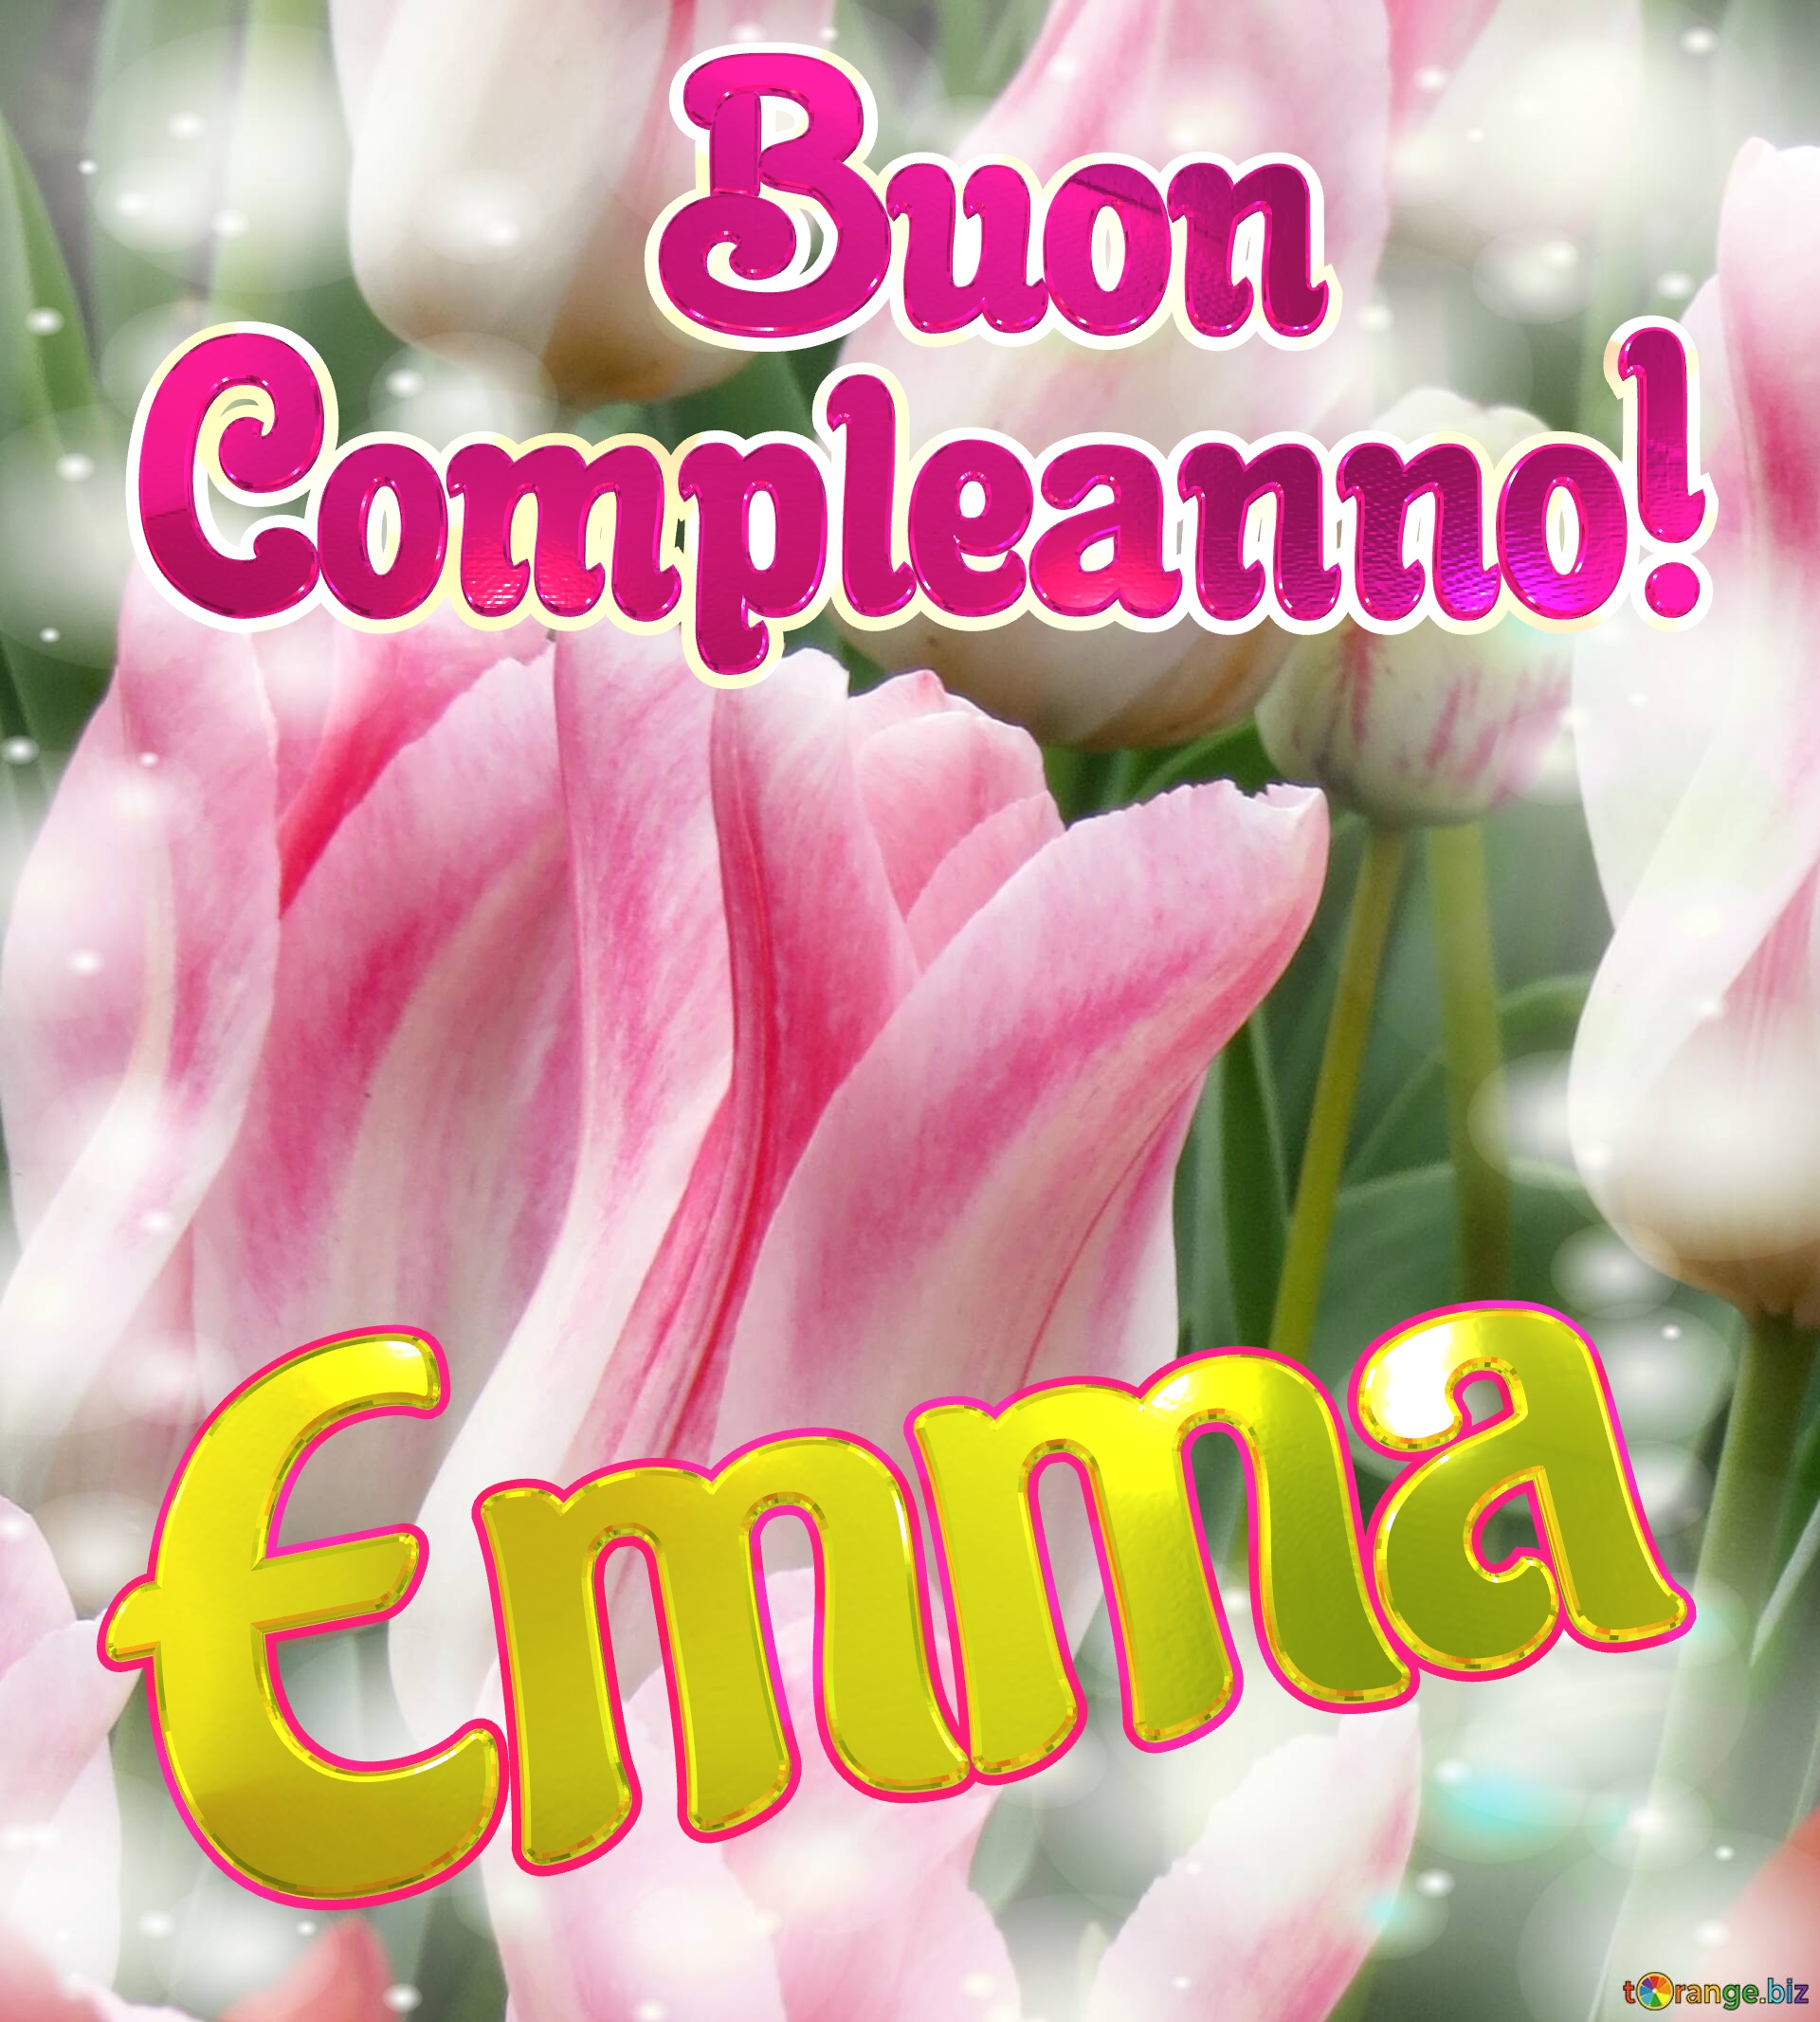       Buon  Compleanno! Emma  La bellezza dei tulipani è un richiamo alla semplicità della vita, goditela al massimo. №0